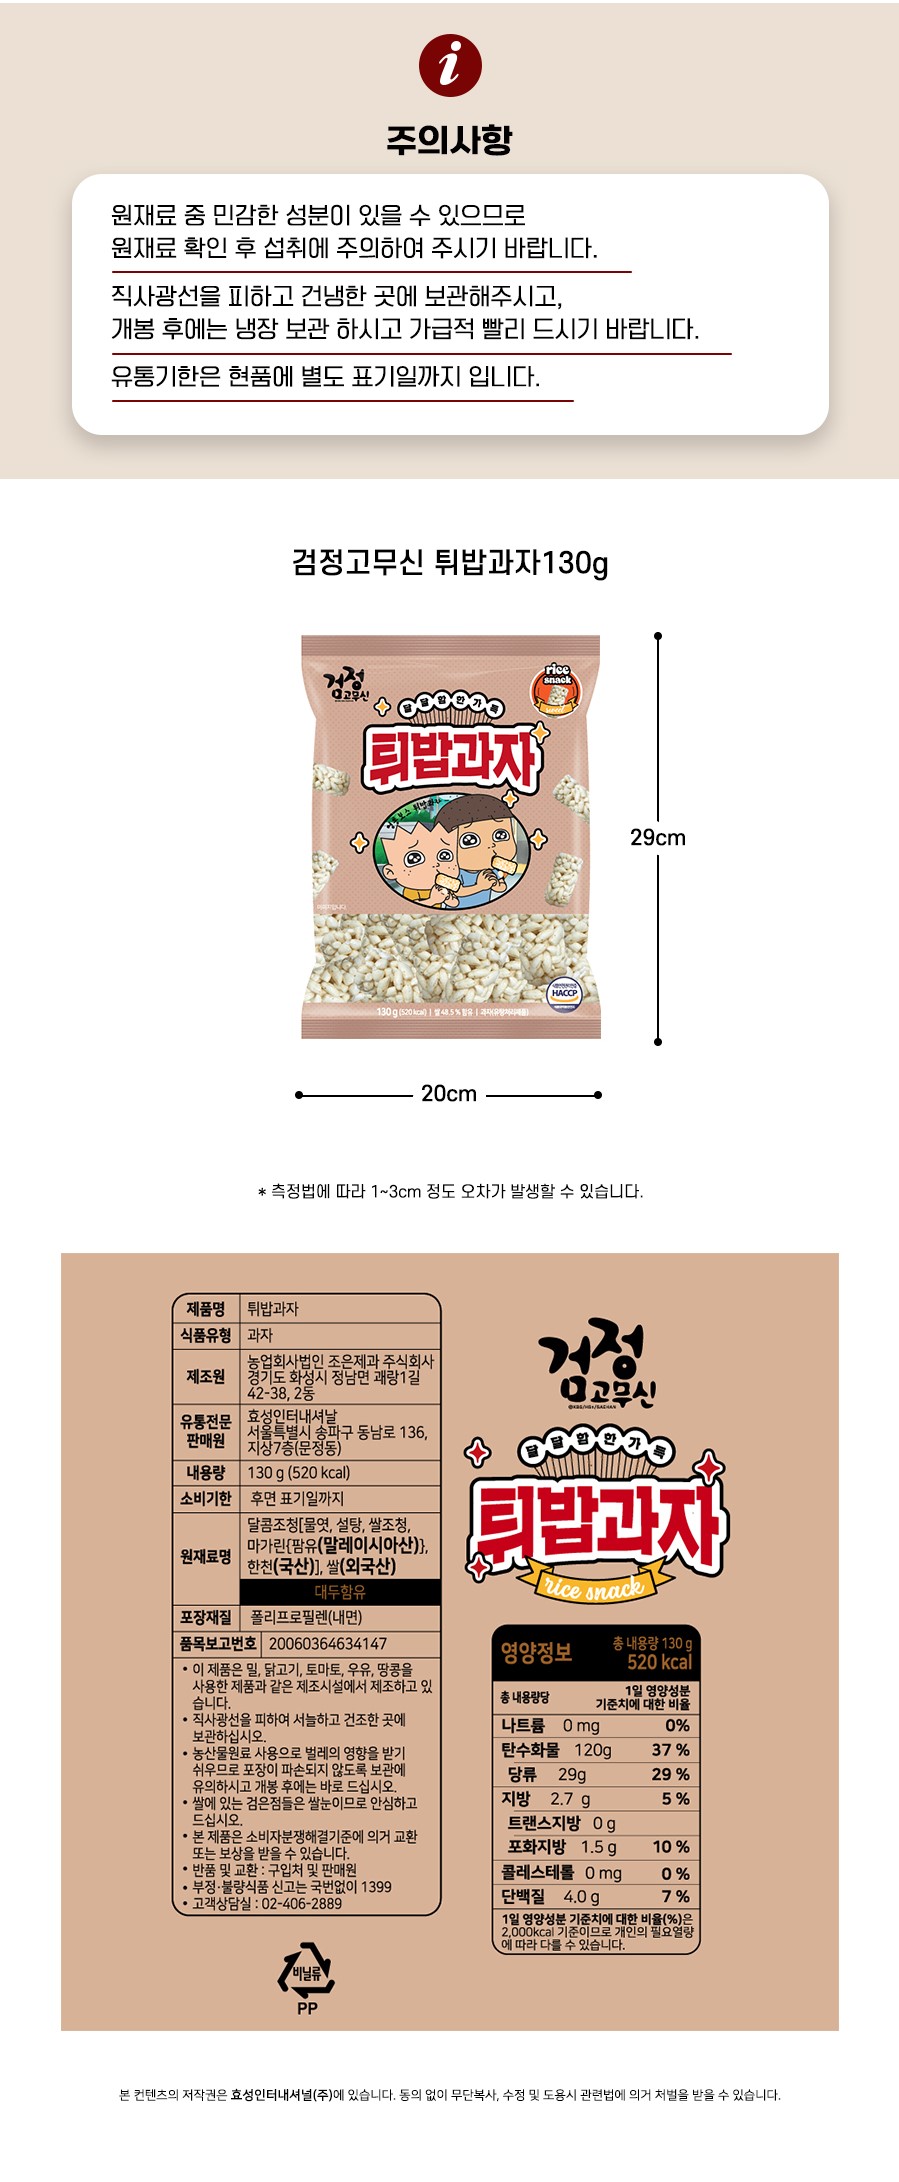 韓國食品-[무직타이거] 튀밥과자 130g